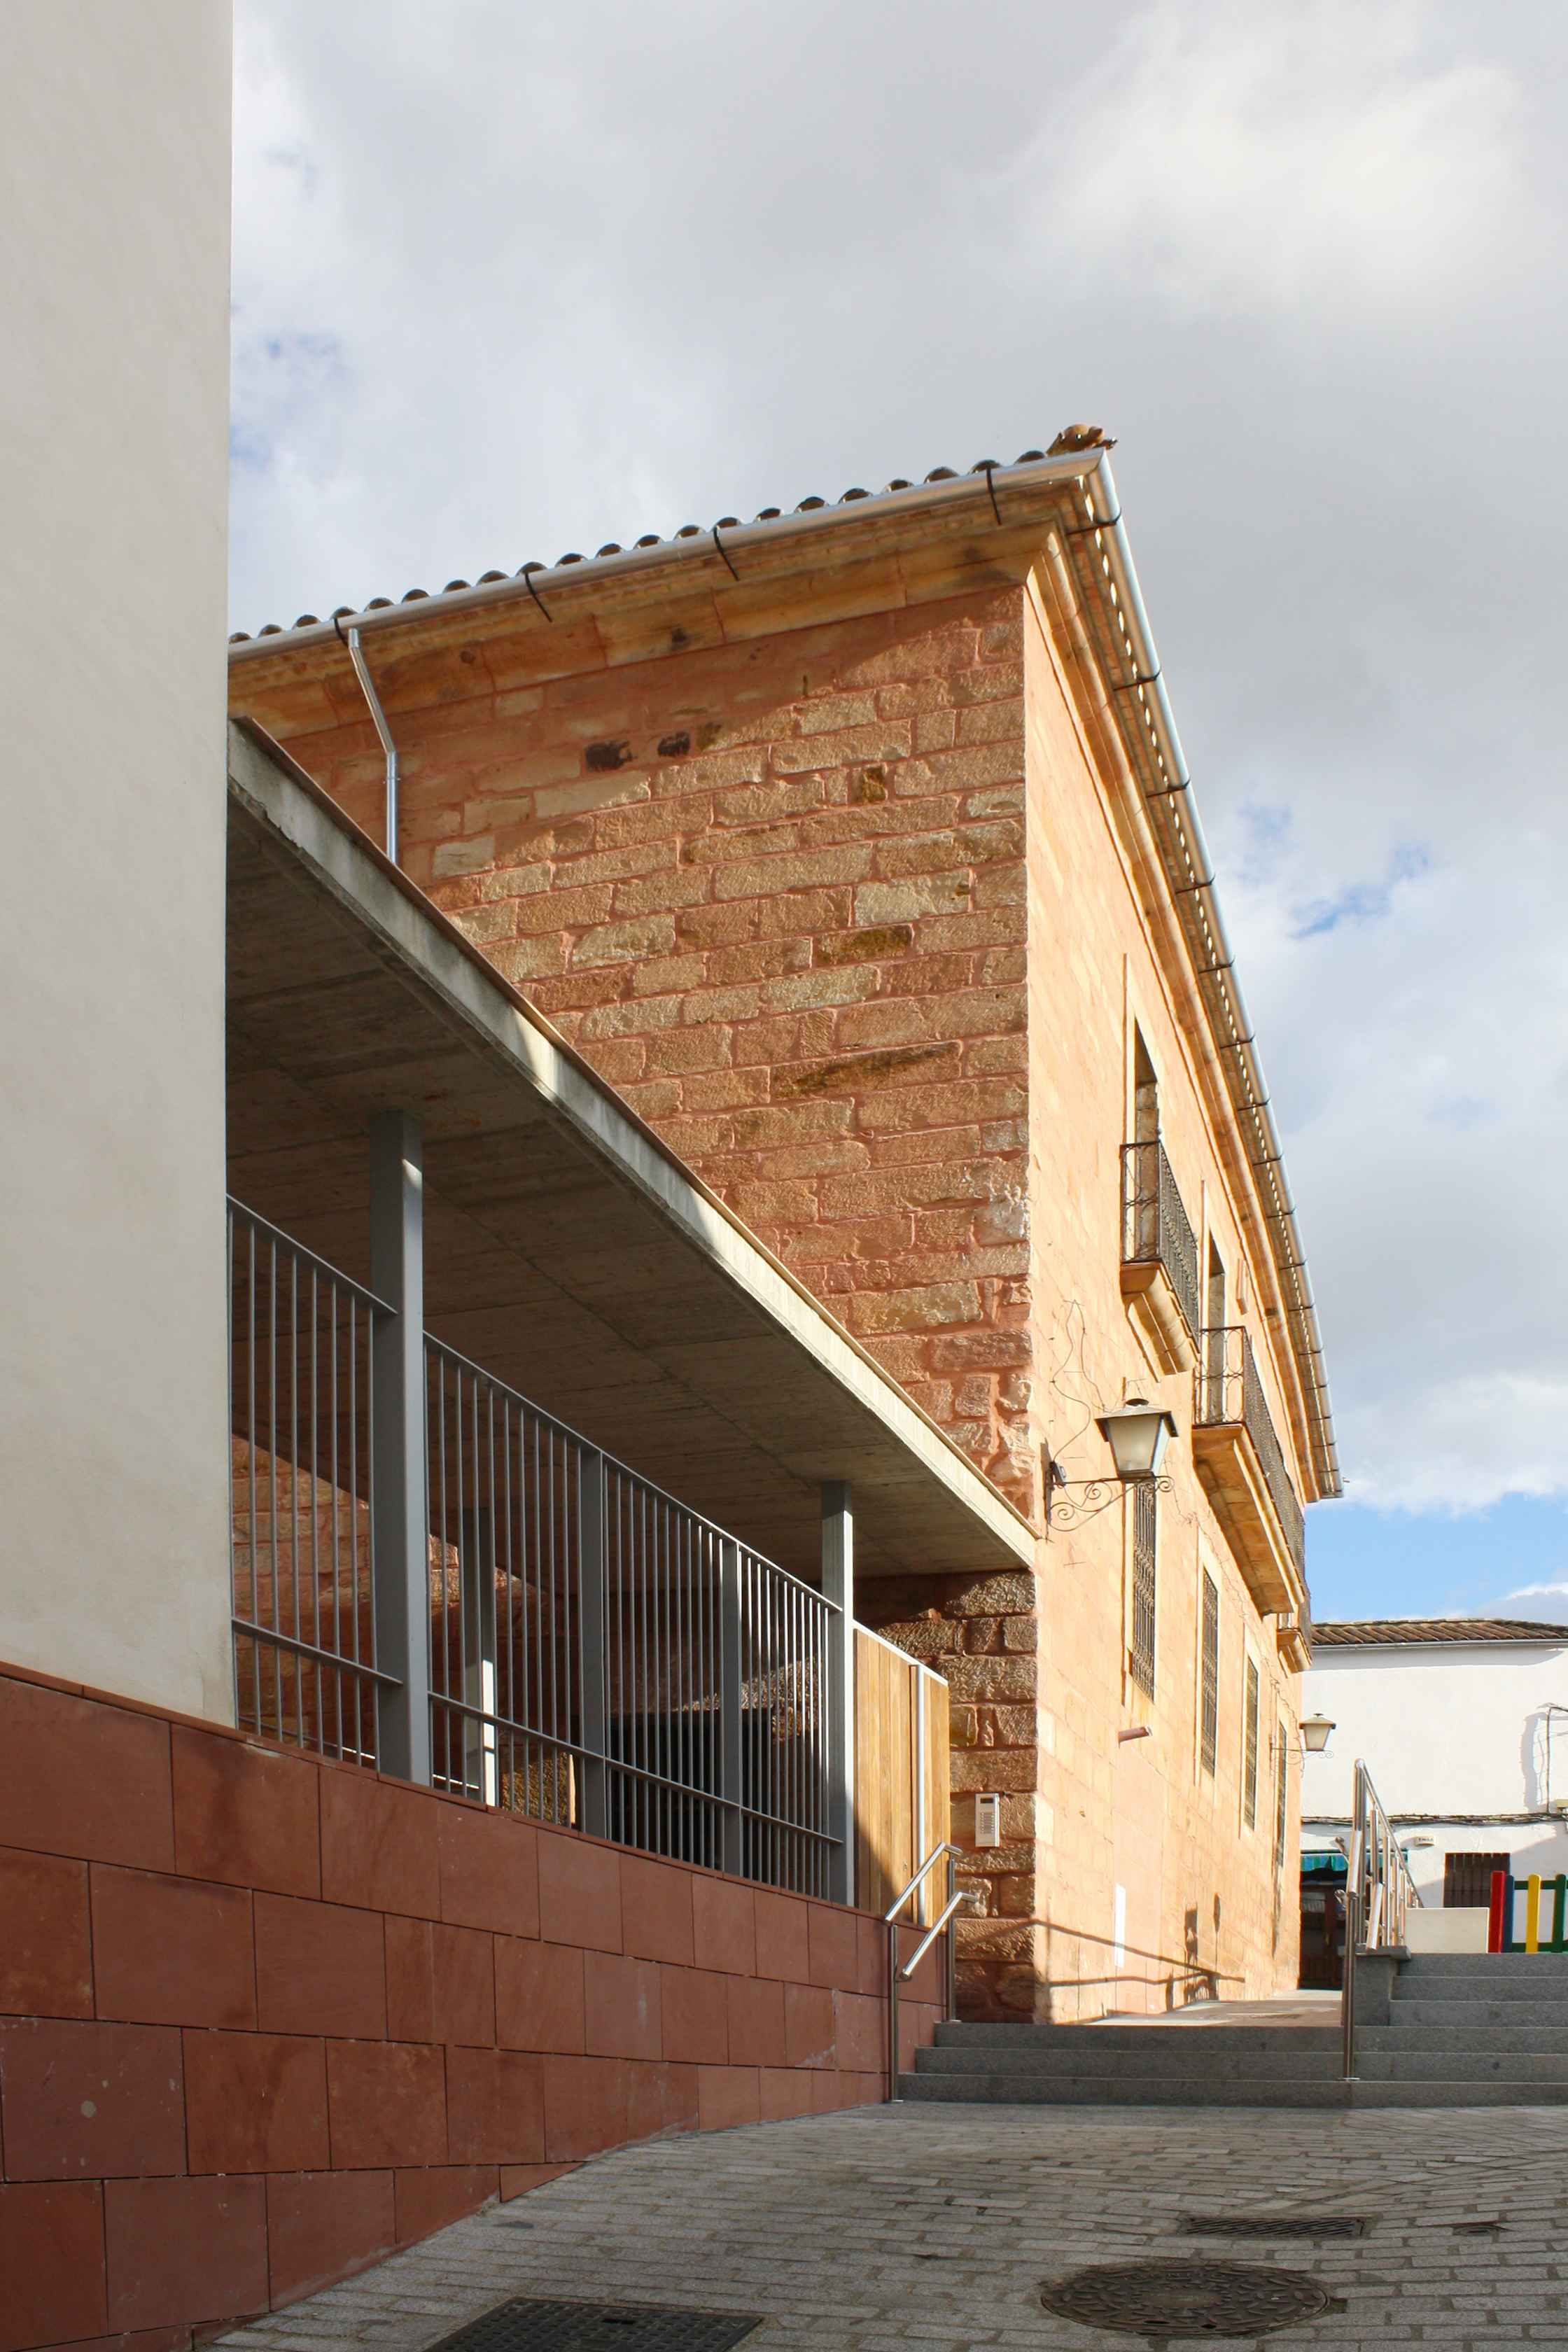 Promoción de viviendas en Montoro (Córdoba) con rehabilitación de Casa Palacio del S. XVIII y obra de nueva planta. Arquitectura contemporánea e histórica en un único proyecto de LAP arquitectos.